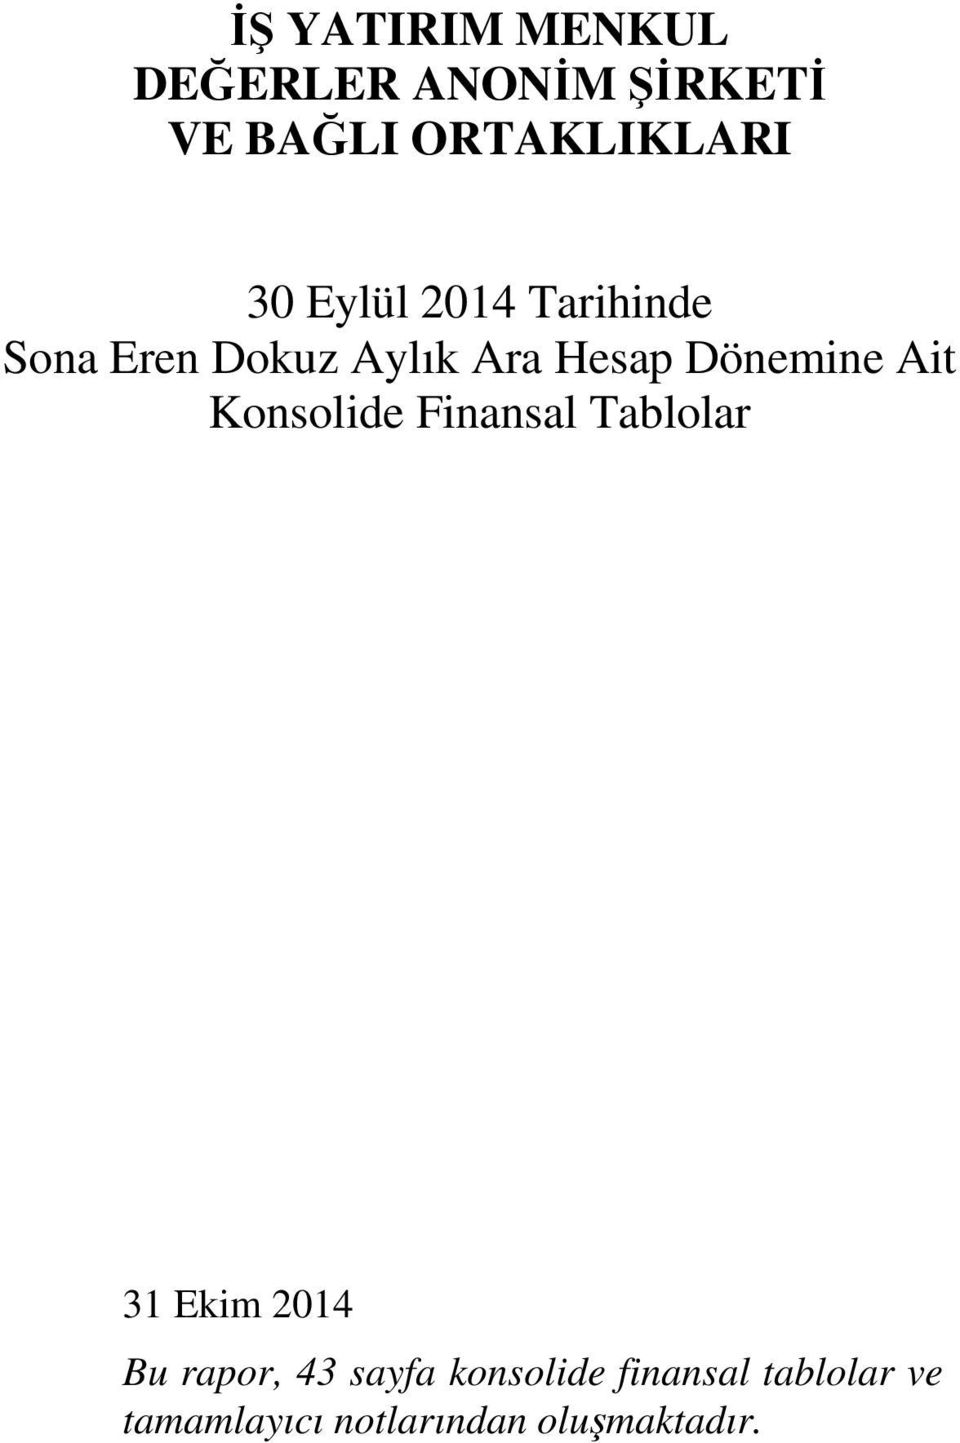 Ait Konsolide Finansal Tablolar 31 Ekim 2014 Bu rapor, 43 sayfa